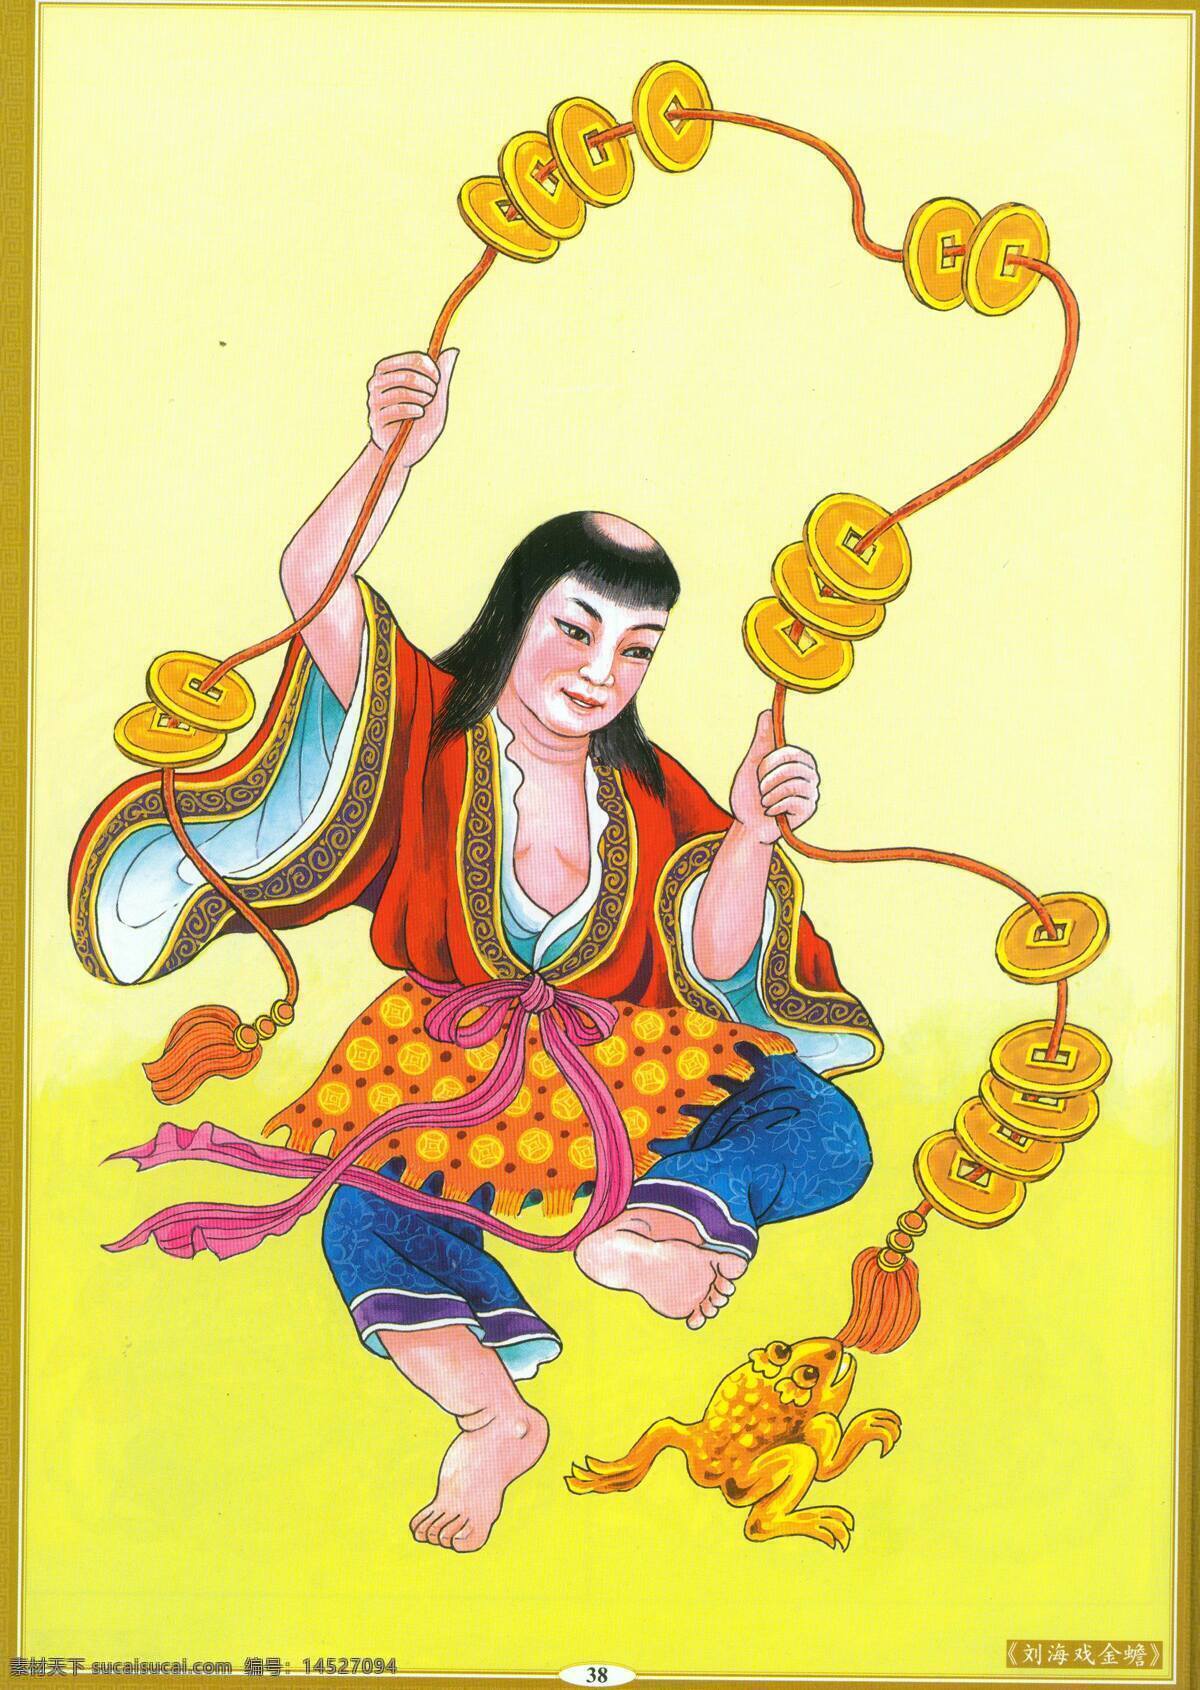 刘海戏金蟾 设计素材 神祇图篇 民间美术 书画美术 黄色